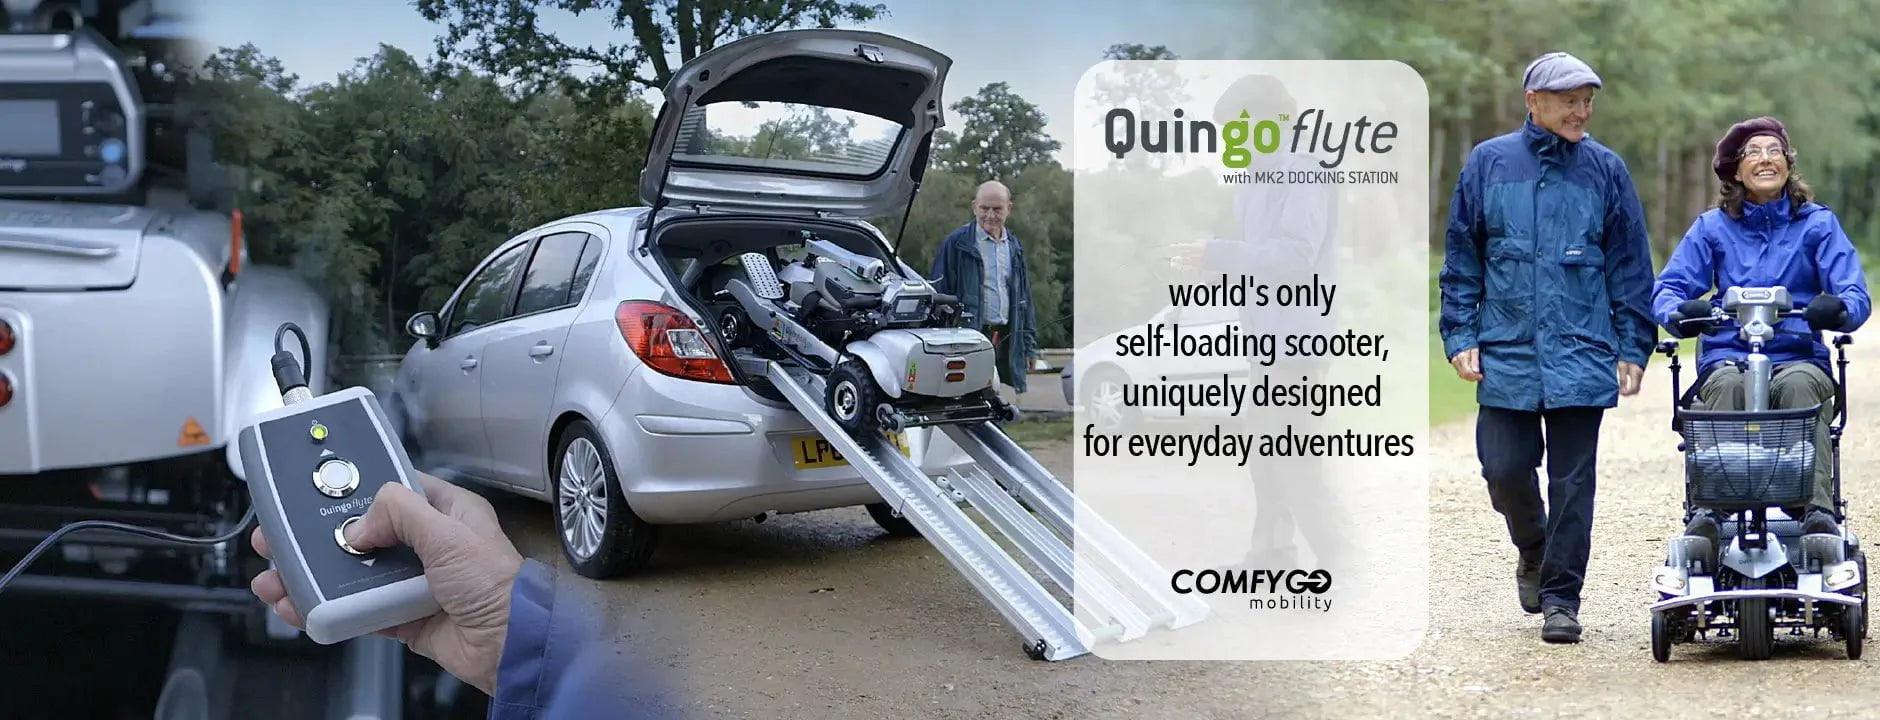 ComFyGo Quingo Ultra Mobility Scooter ComfyGo